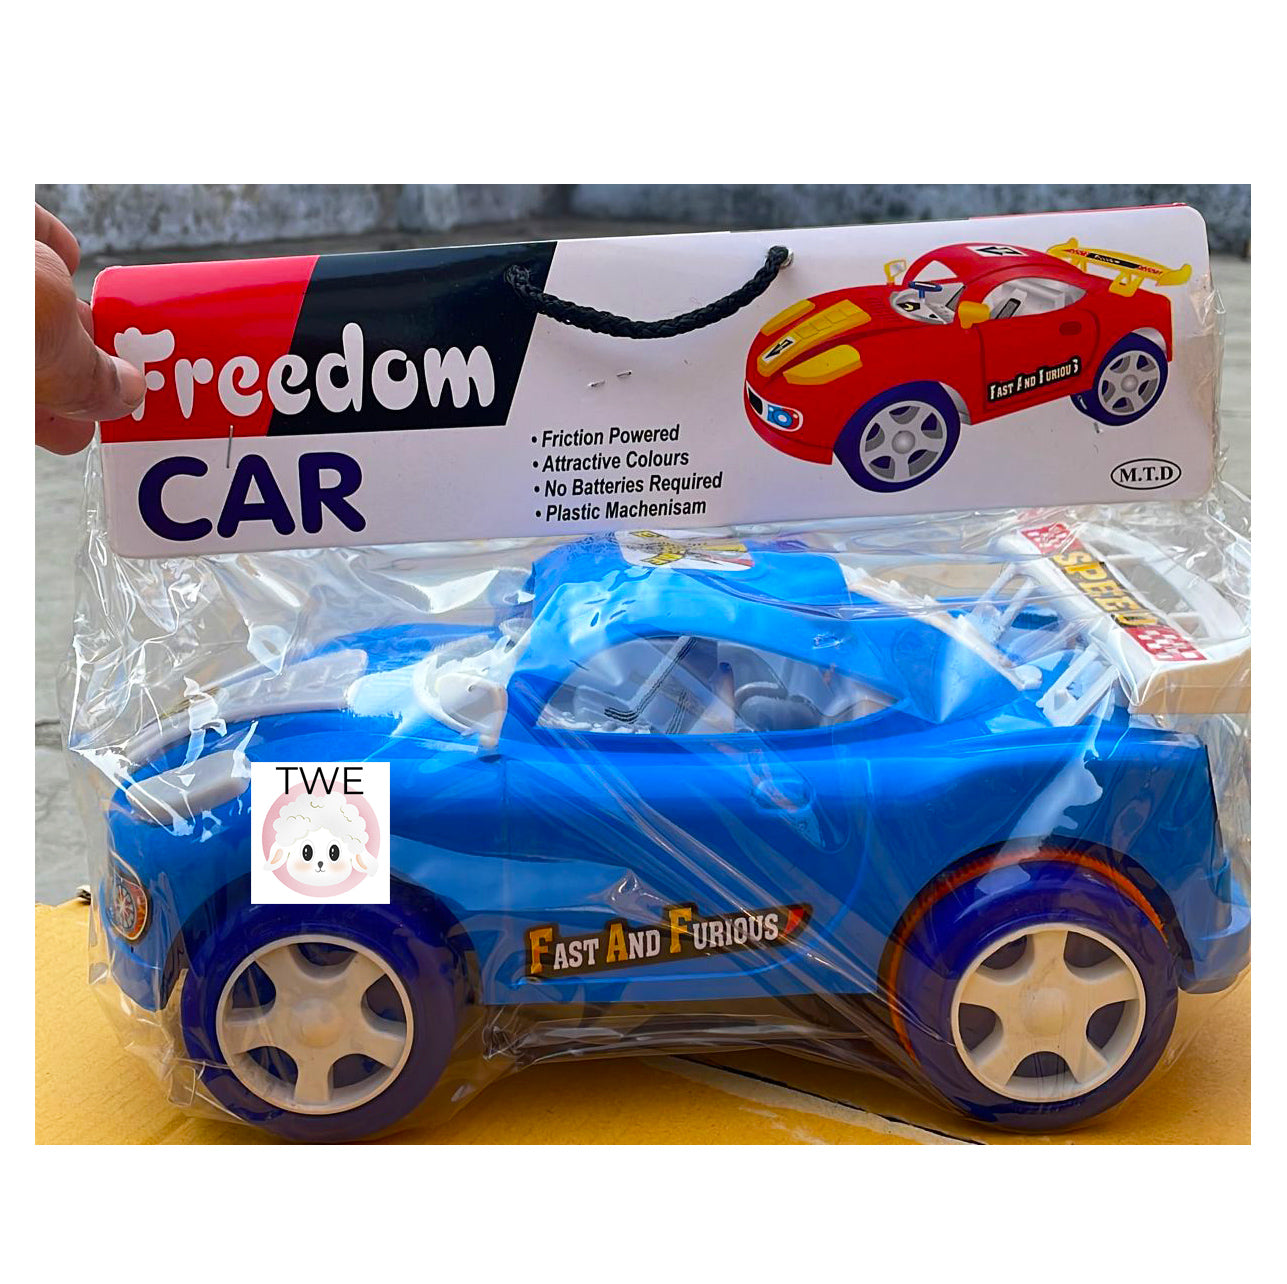 Freedom Car Friction based